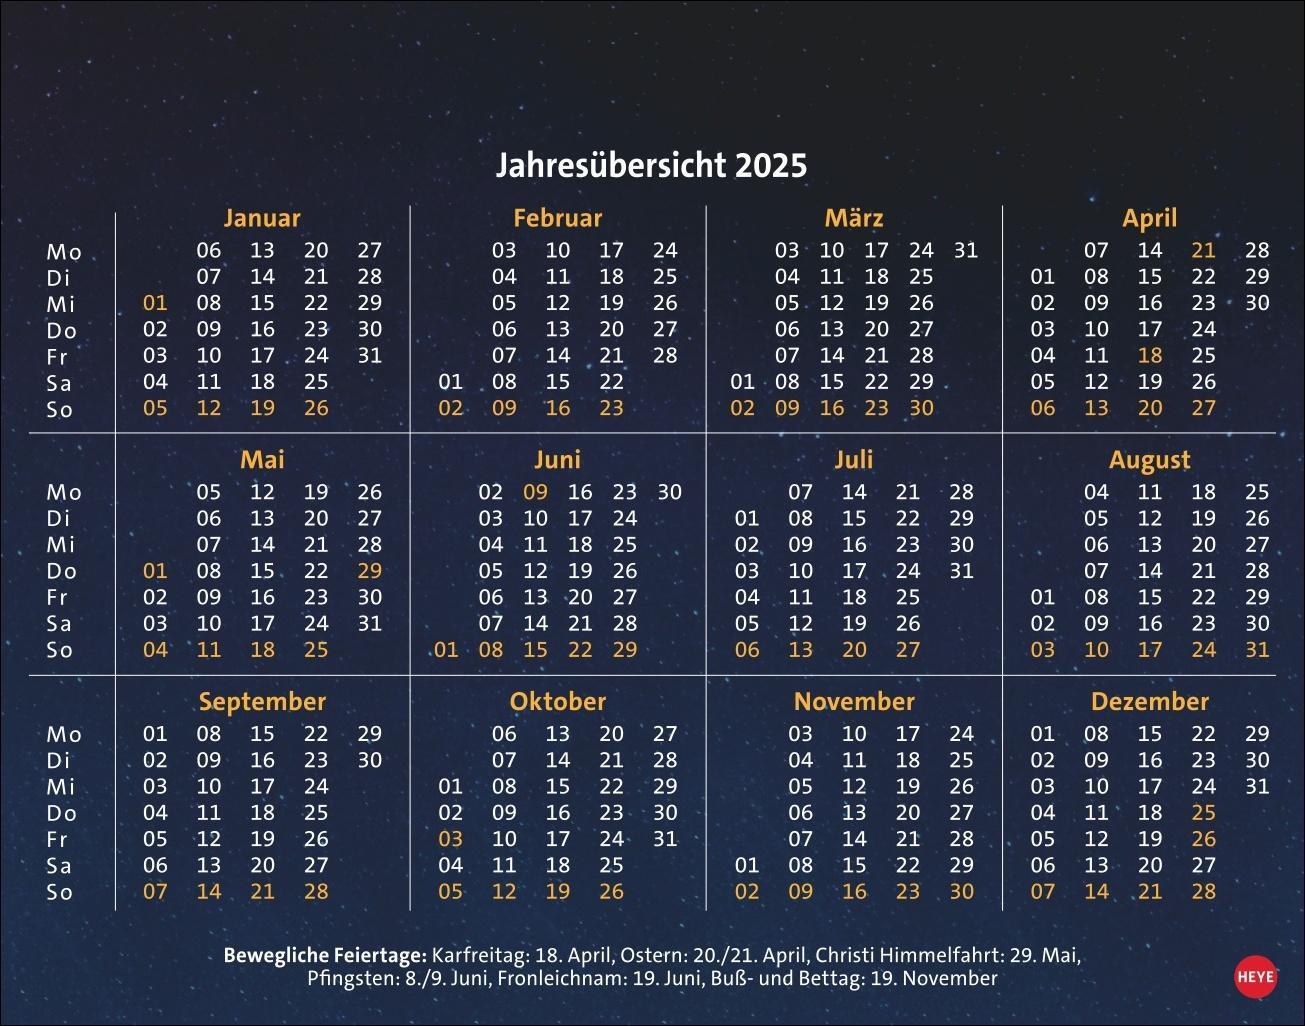 Bild: 9783756408900 | Quizduell Olymp Tagesabreißkalender 2025 | Kalender | 320 S. | Deutsch